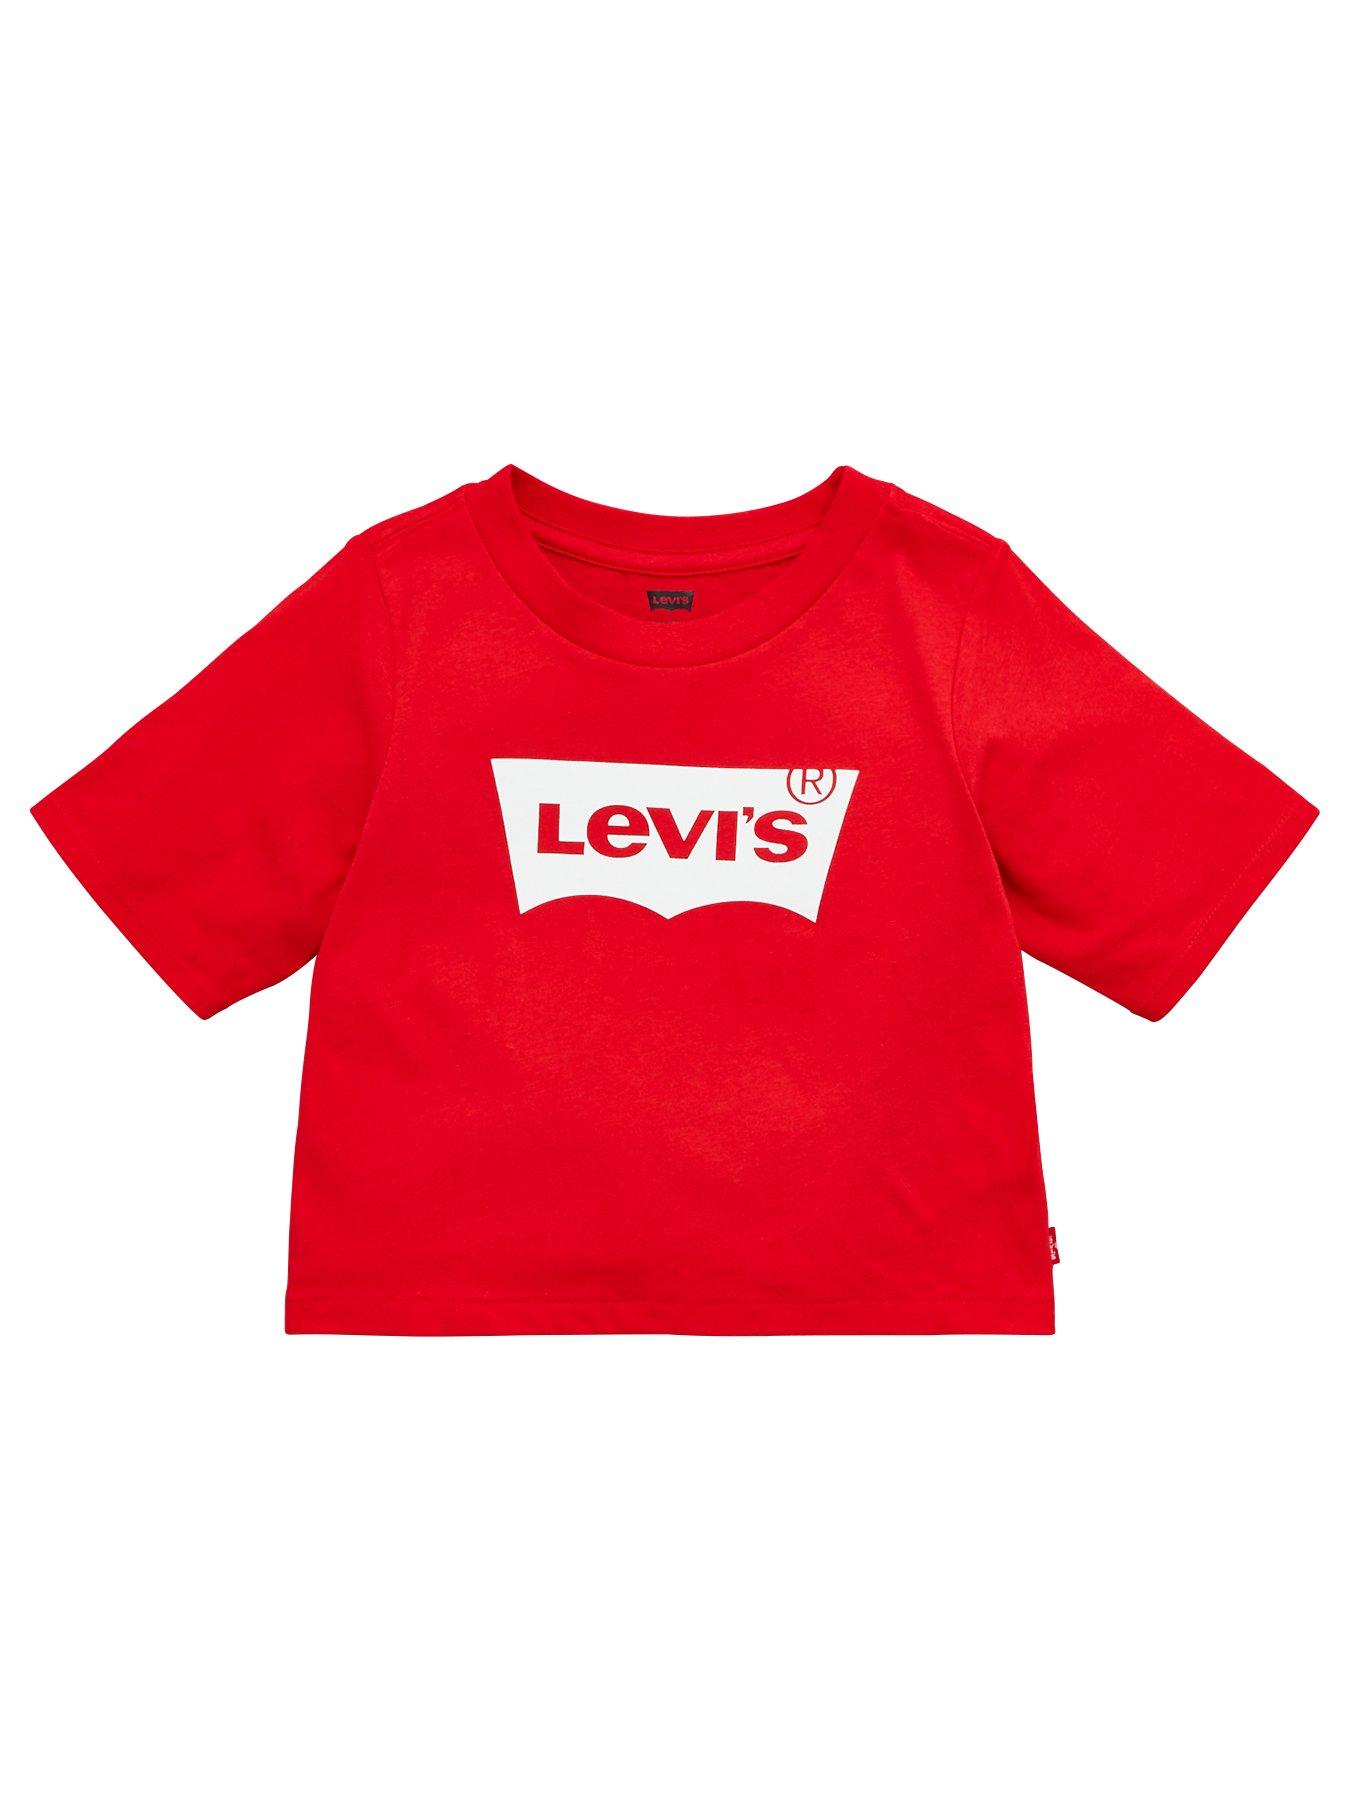 levi's kidswear outlet